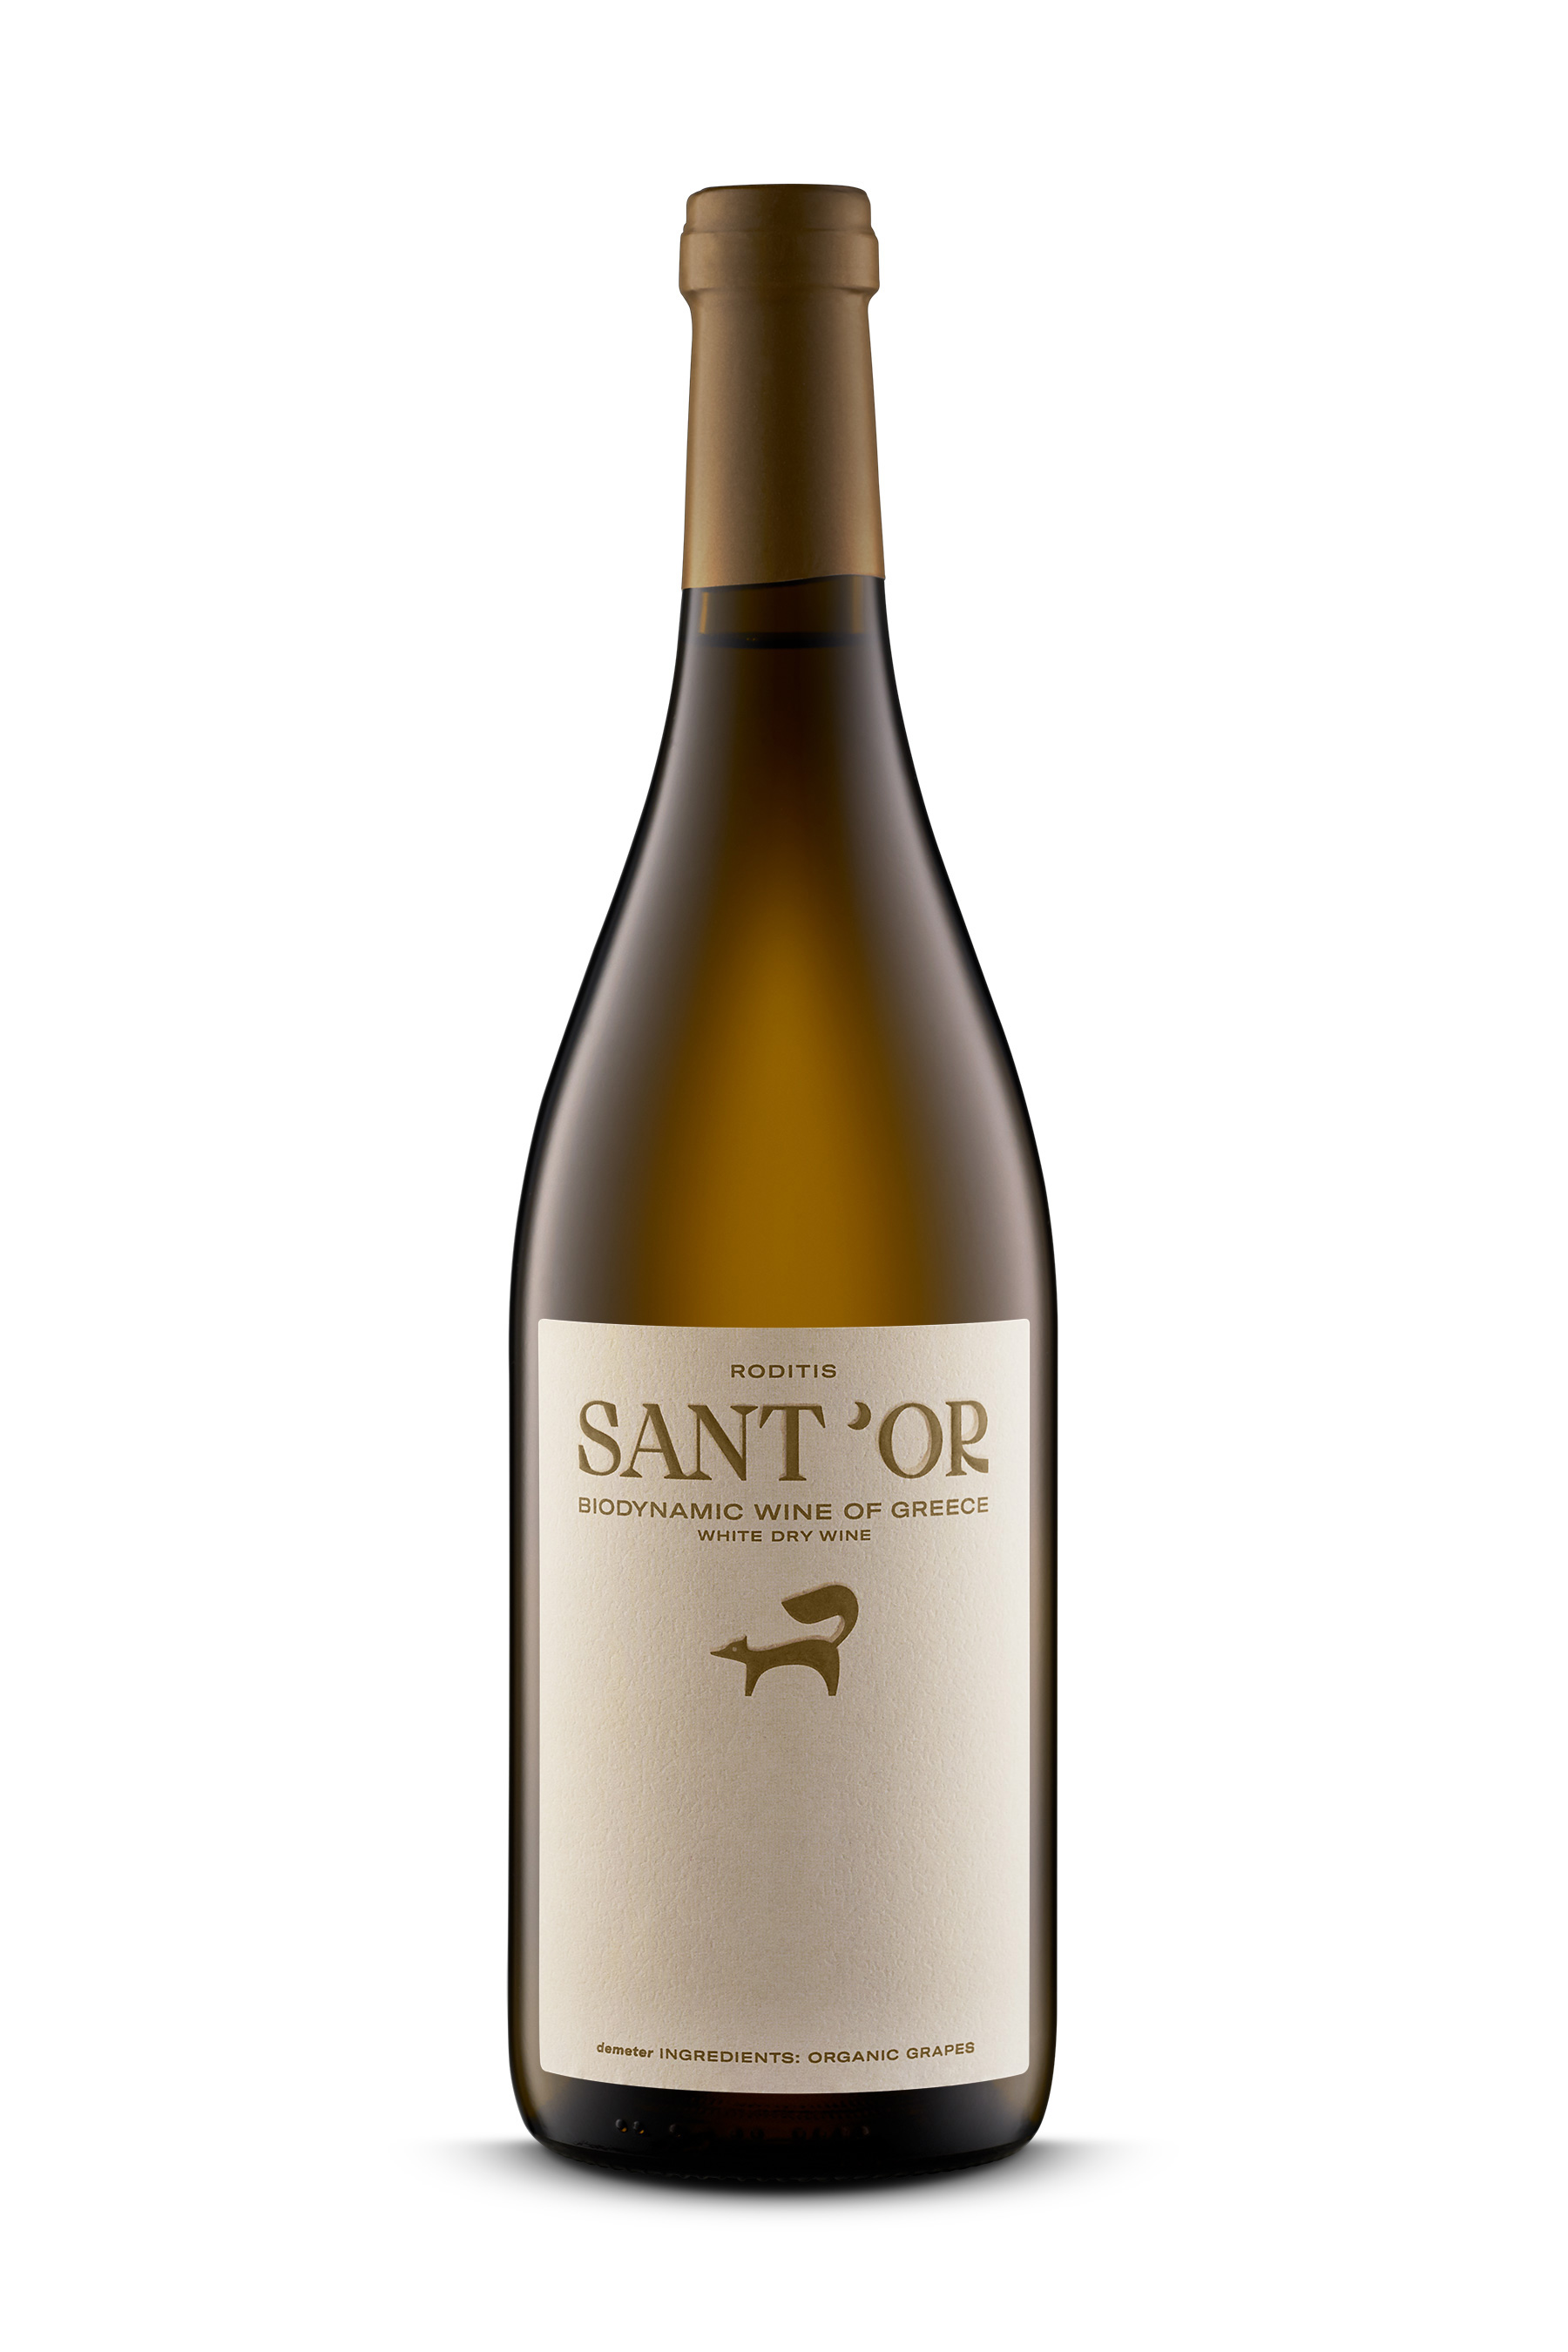 Santor Wine Packaging Fox kommigraphics